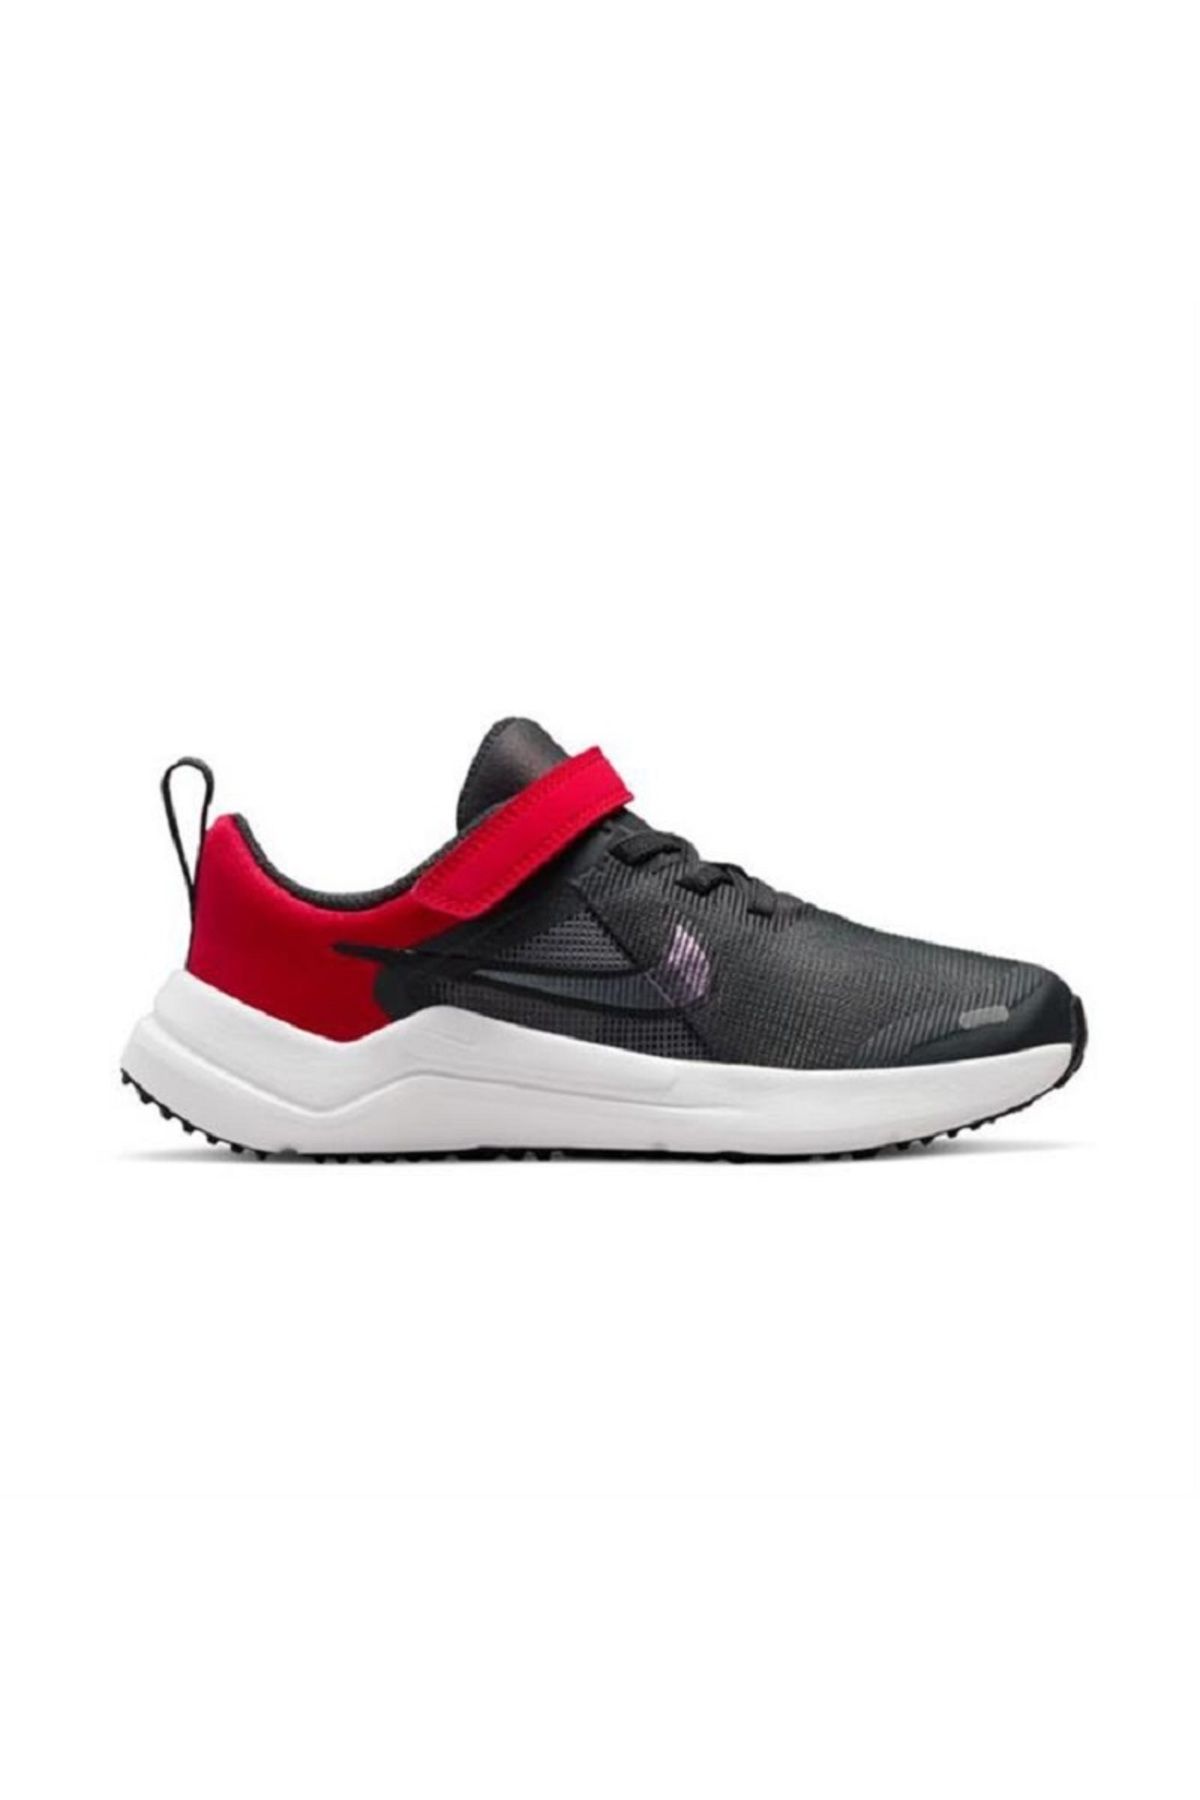 Nike Erkek Çocuk Siyah-Kırmızı Yürüyüş Ayakkabısı Bantlı DM4193-001 (34 NUMARA-İÇ ÖLÇÜ 21,5 CM)